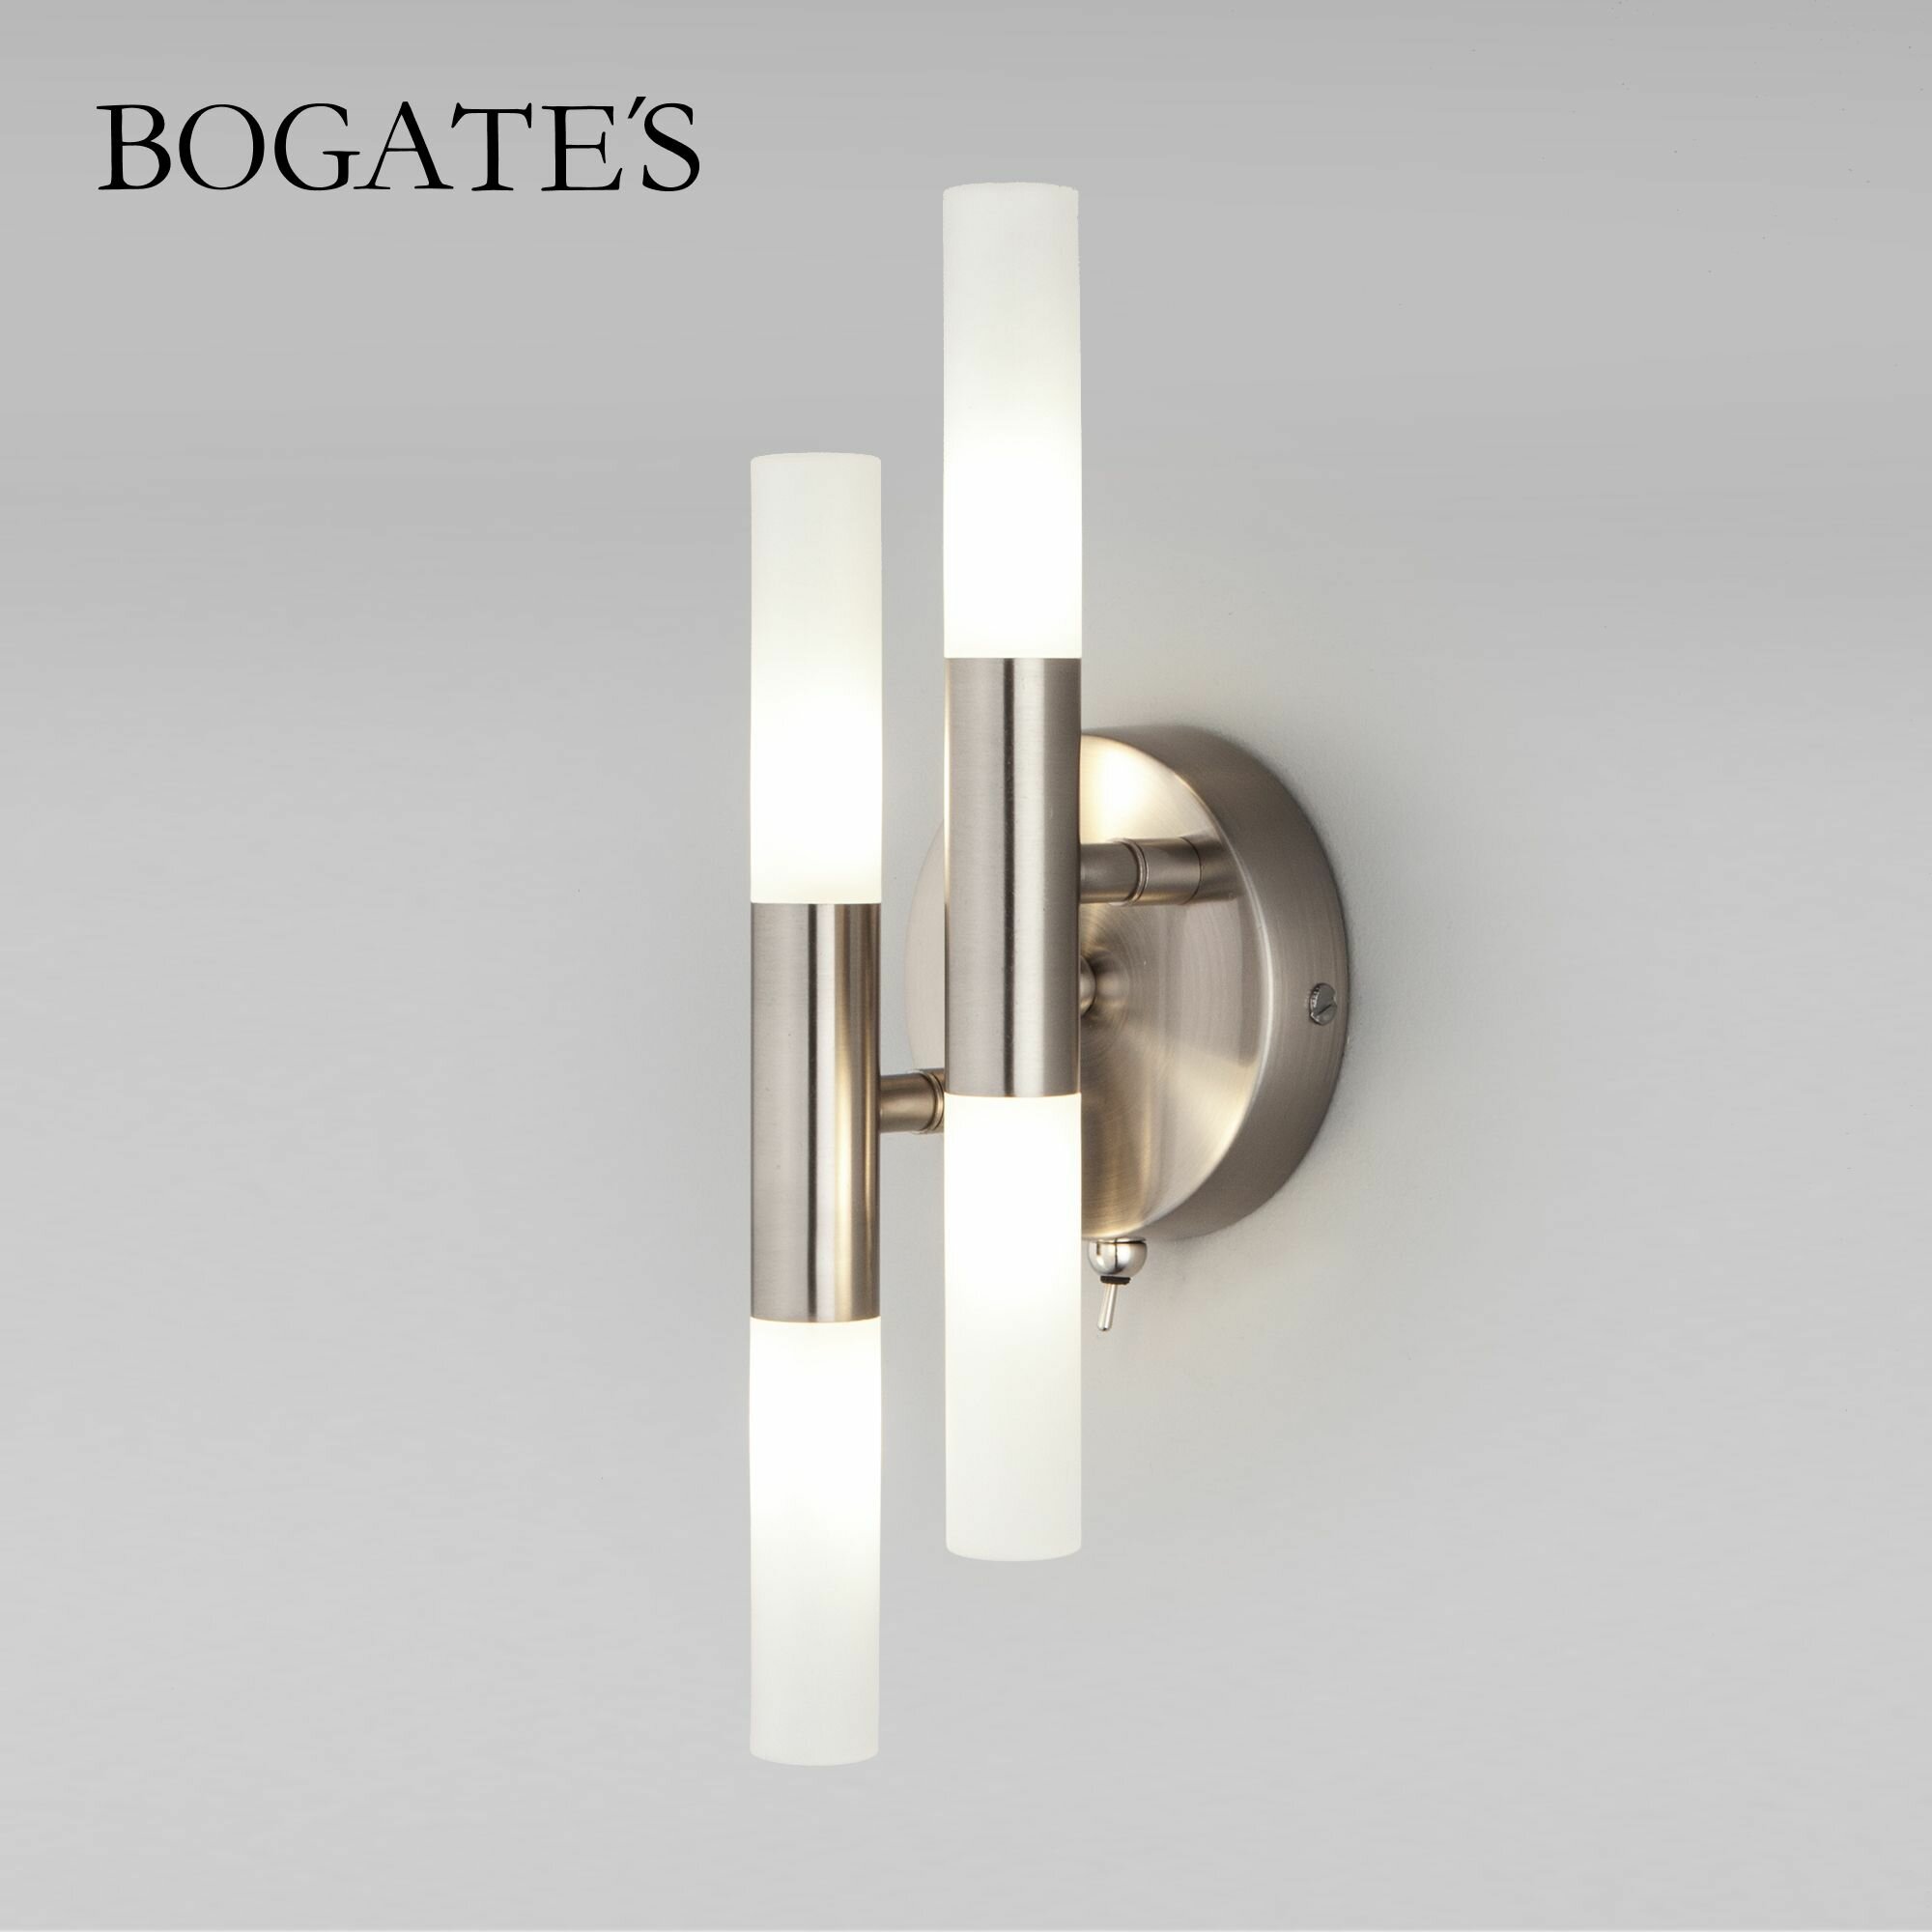 Бра / Настенный светильник Bogate's Bastone 347/4, цвет никель